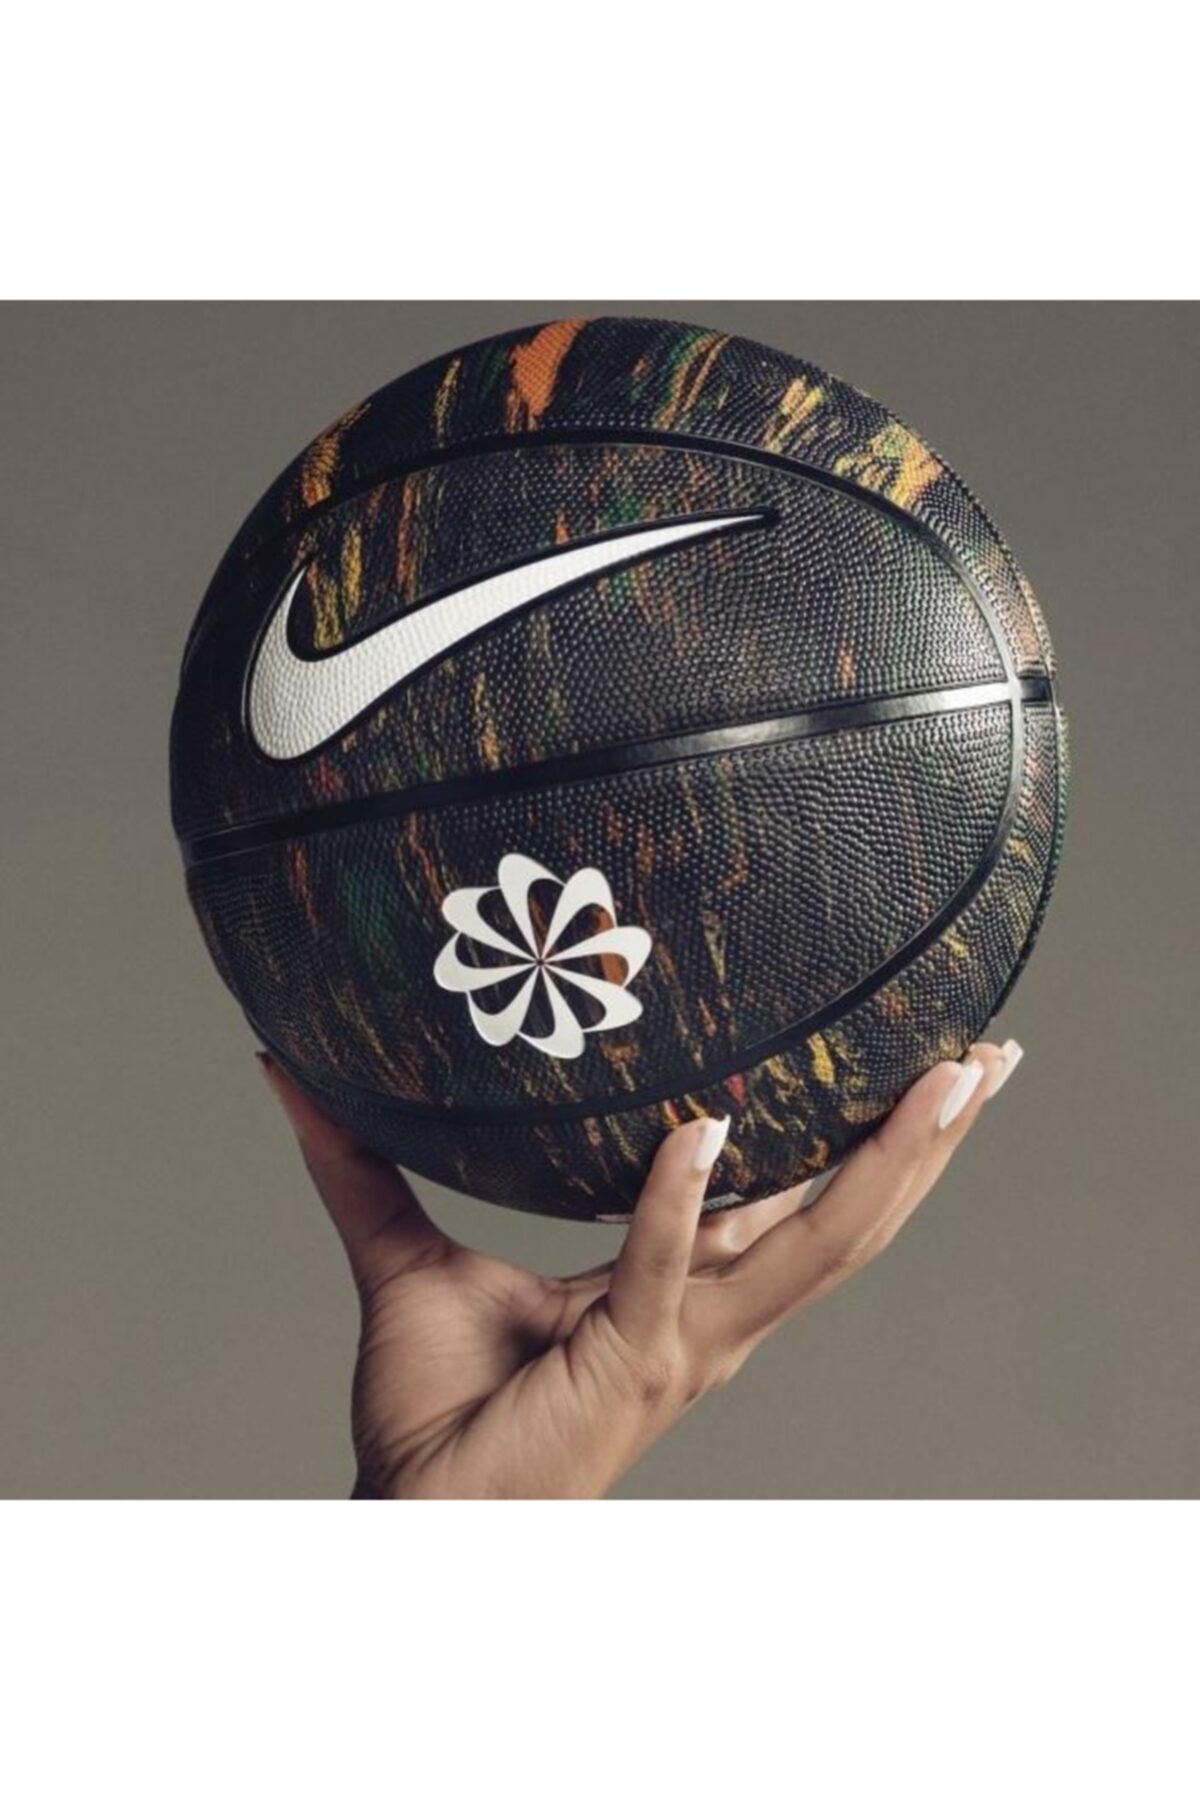 Nike N.100.2477.973.07 Basketball 8p Revival Basketbol Topu